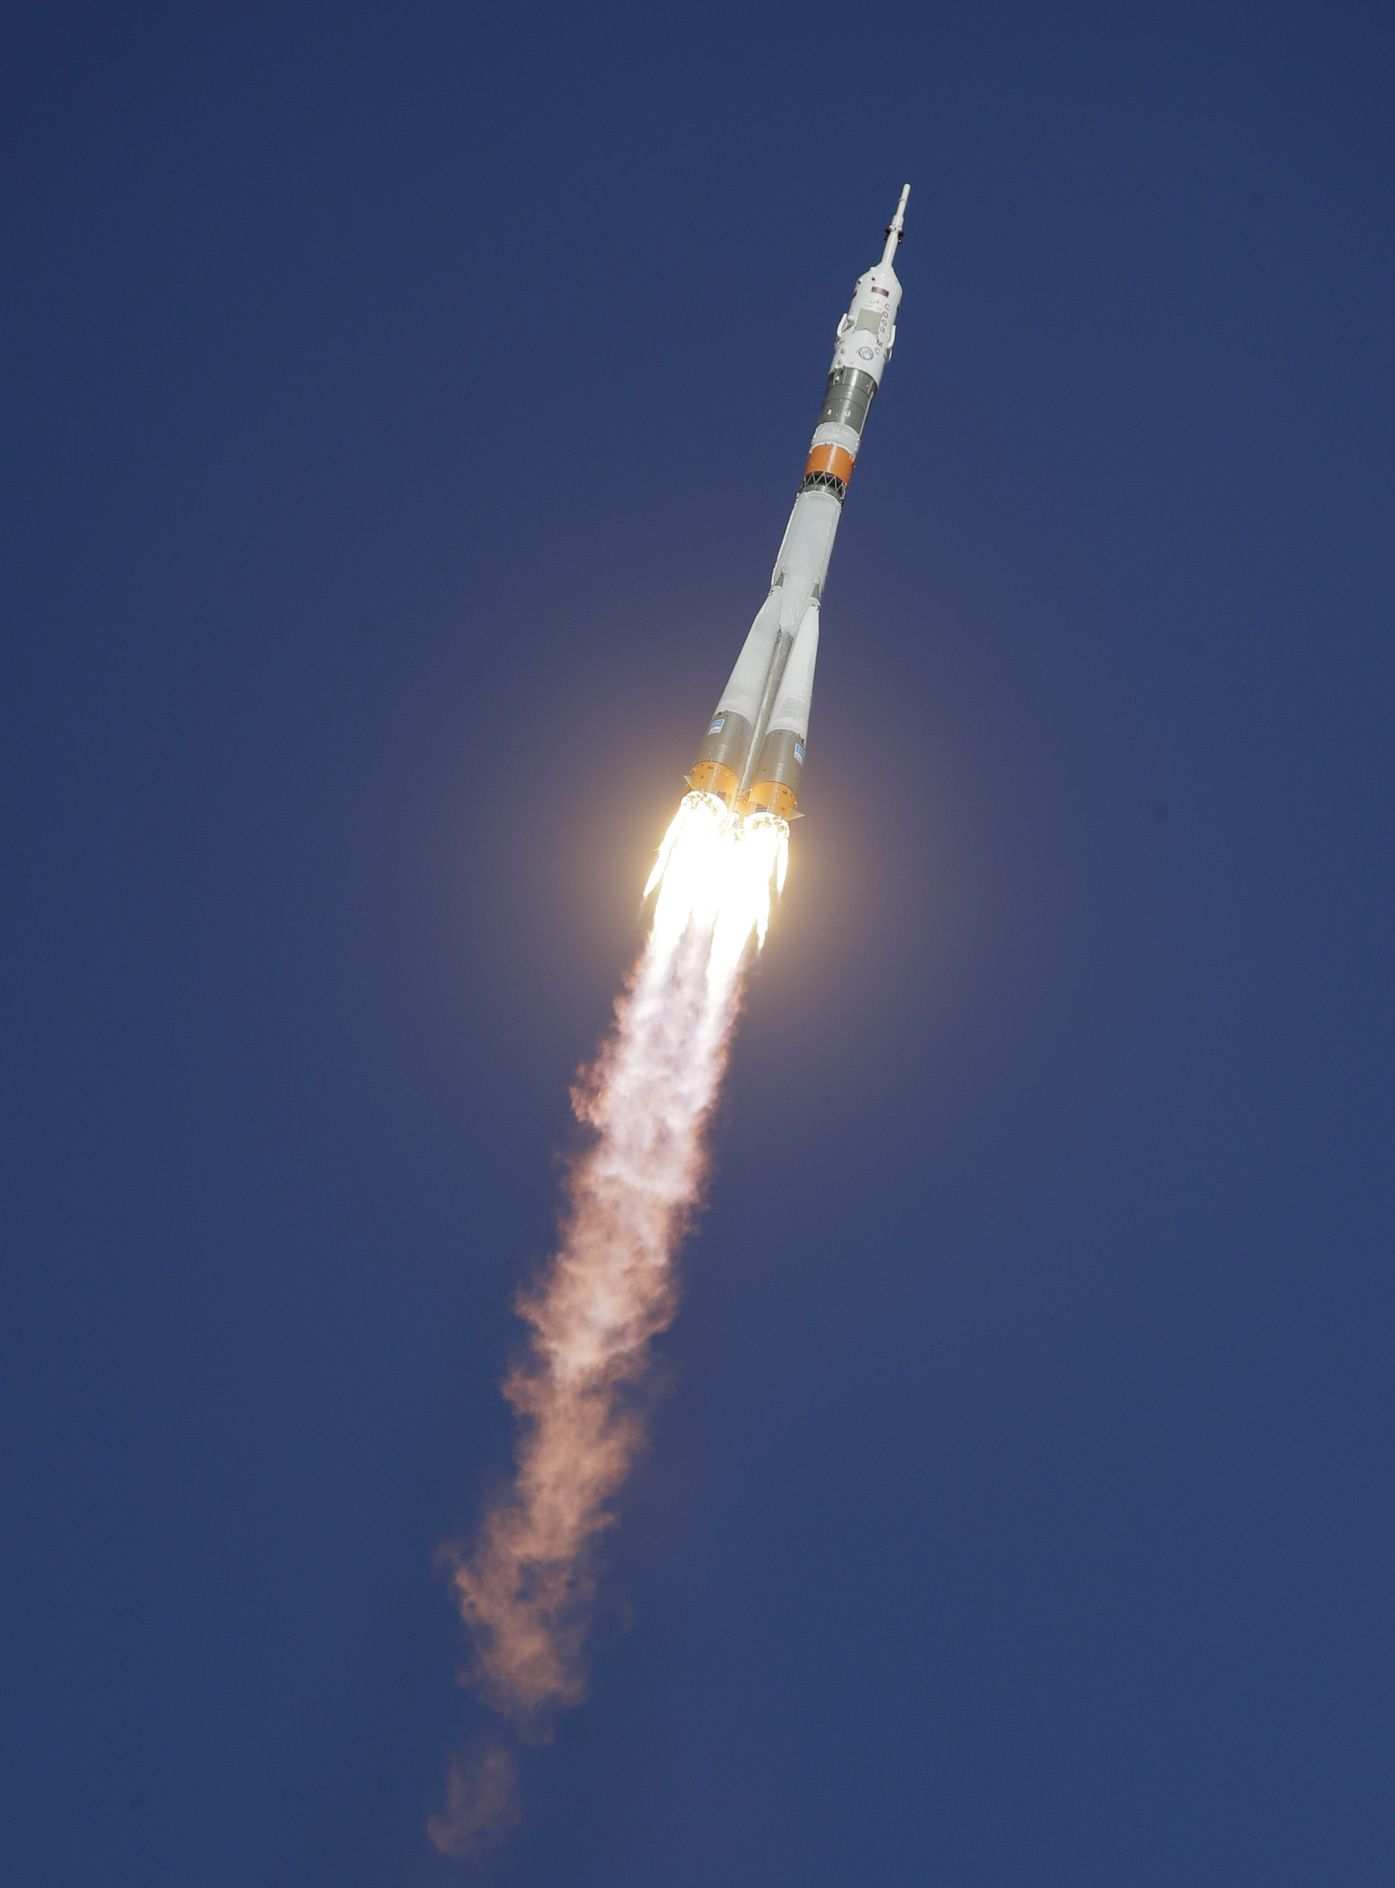 مأموریت فضاپیمای روسیه,اخبار علمی,خبرهای علمی,نجوم و فضا